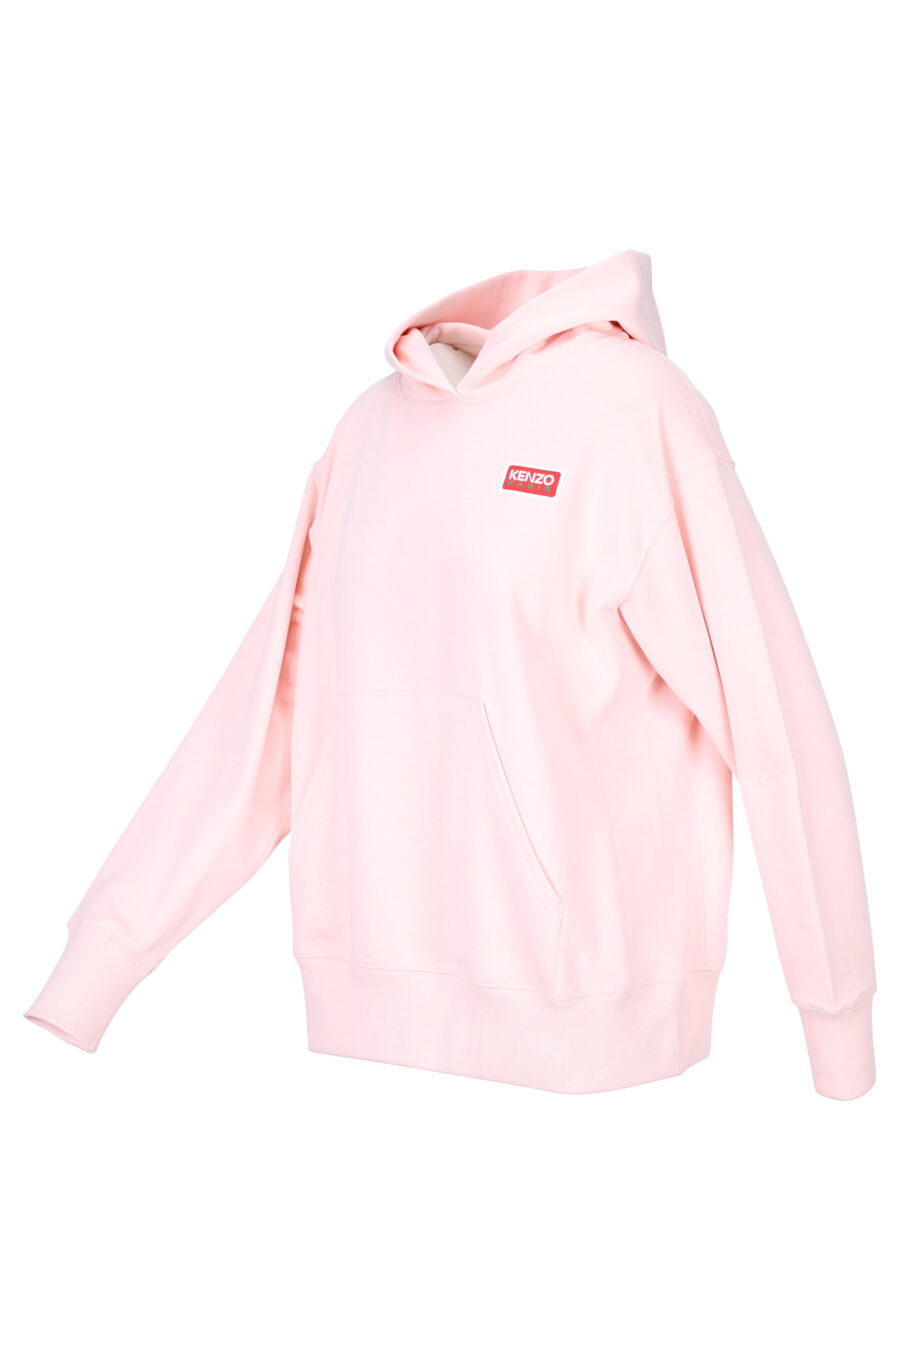 Sweat oversize rose à capuche avec logo "kenzo paris" - 3612230515734 1